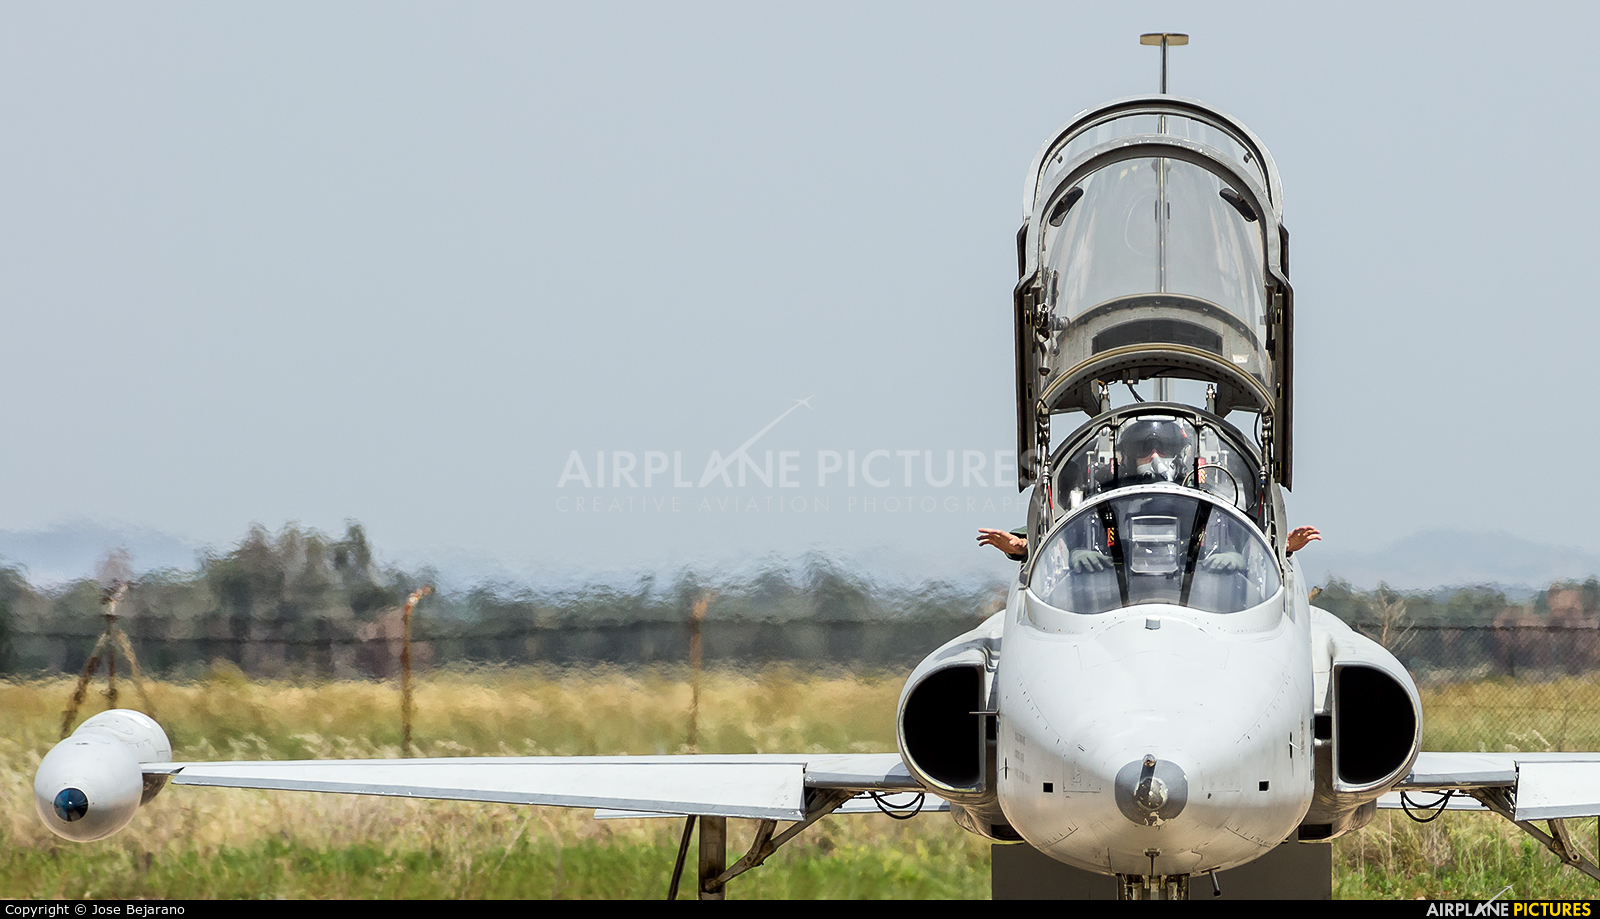 Spain - Air Force AE.9-001 aircraft at Badajoz/ Talavera la Real Air Base